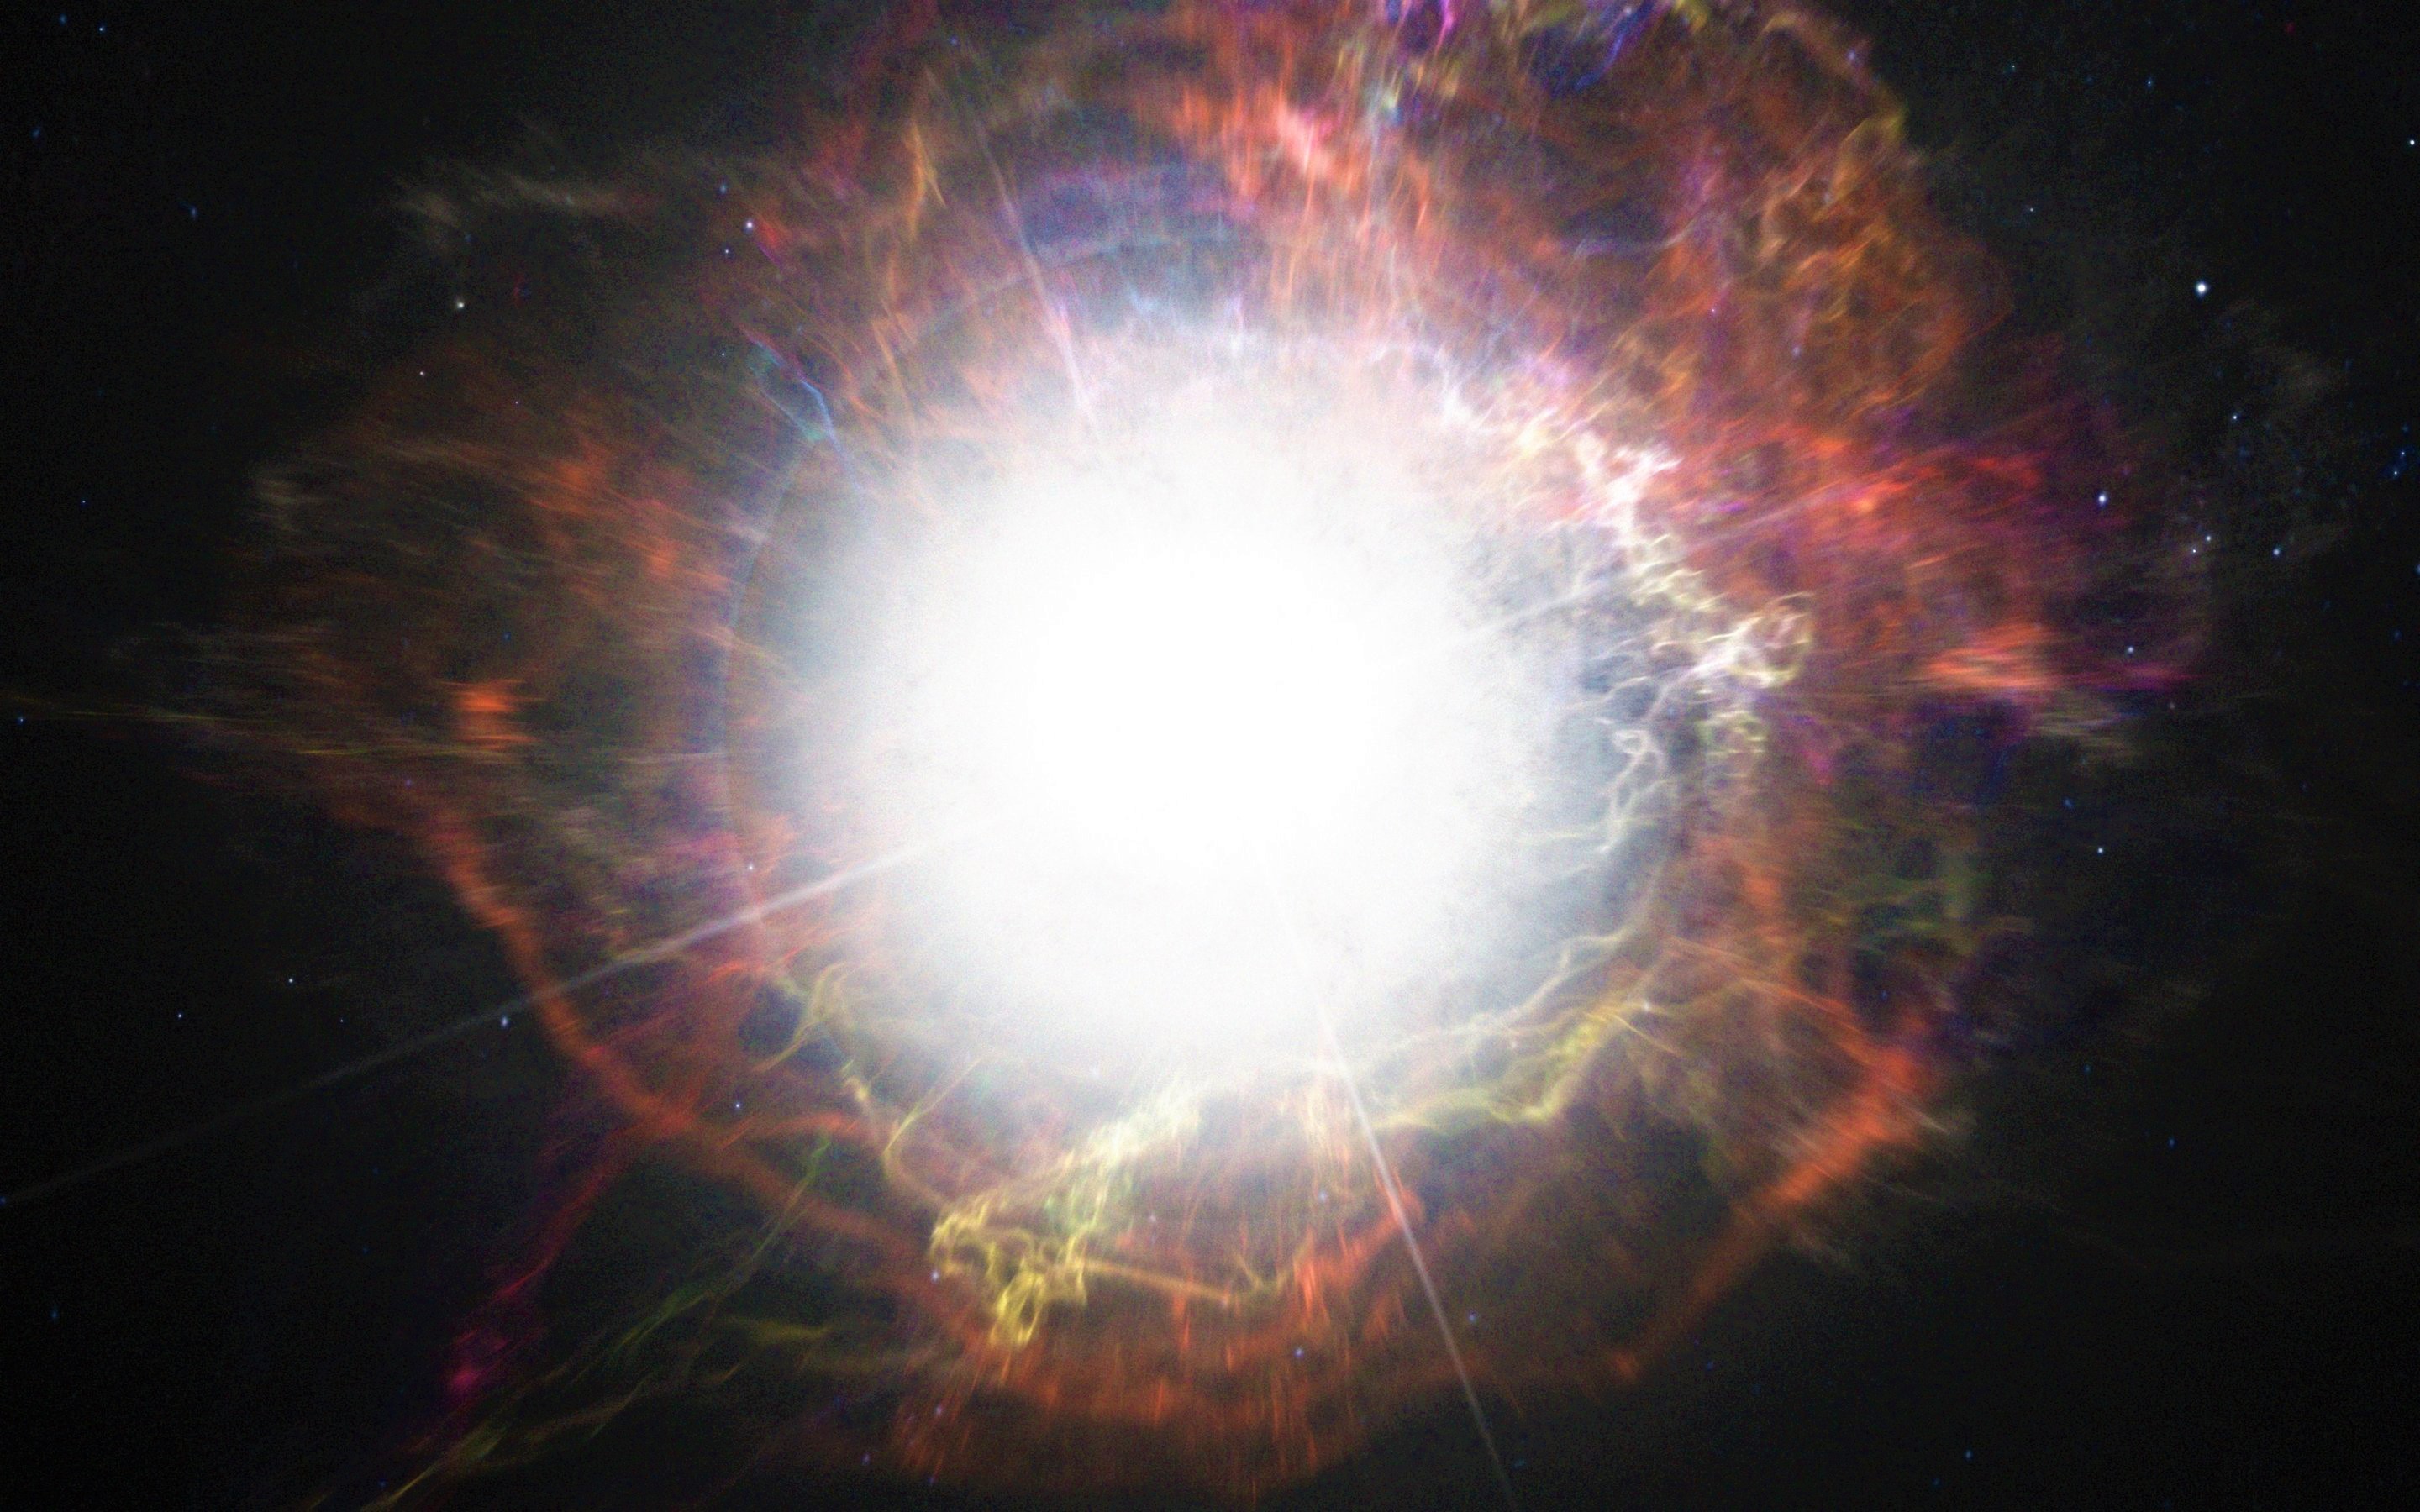 Les supernovae de type Ia apparaissent après l’explosion d’une naine blanche. Une naine blanche relativement massive, pensaient les chercheurs. Mais il apparaît aujourd’hui que les premières d’entre elles ont pu exploser alors même qu’elles étaient relativement petites. © ESO/M. Kornmesser